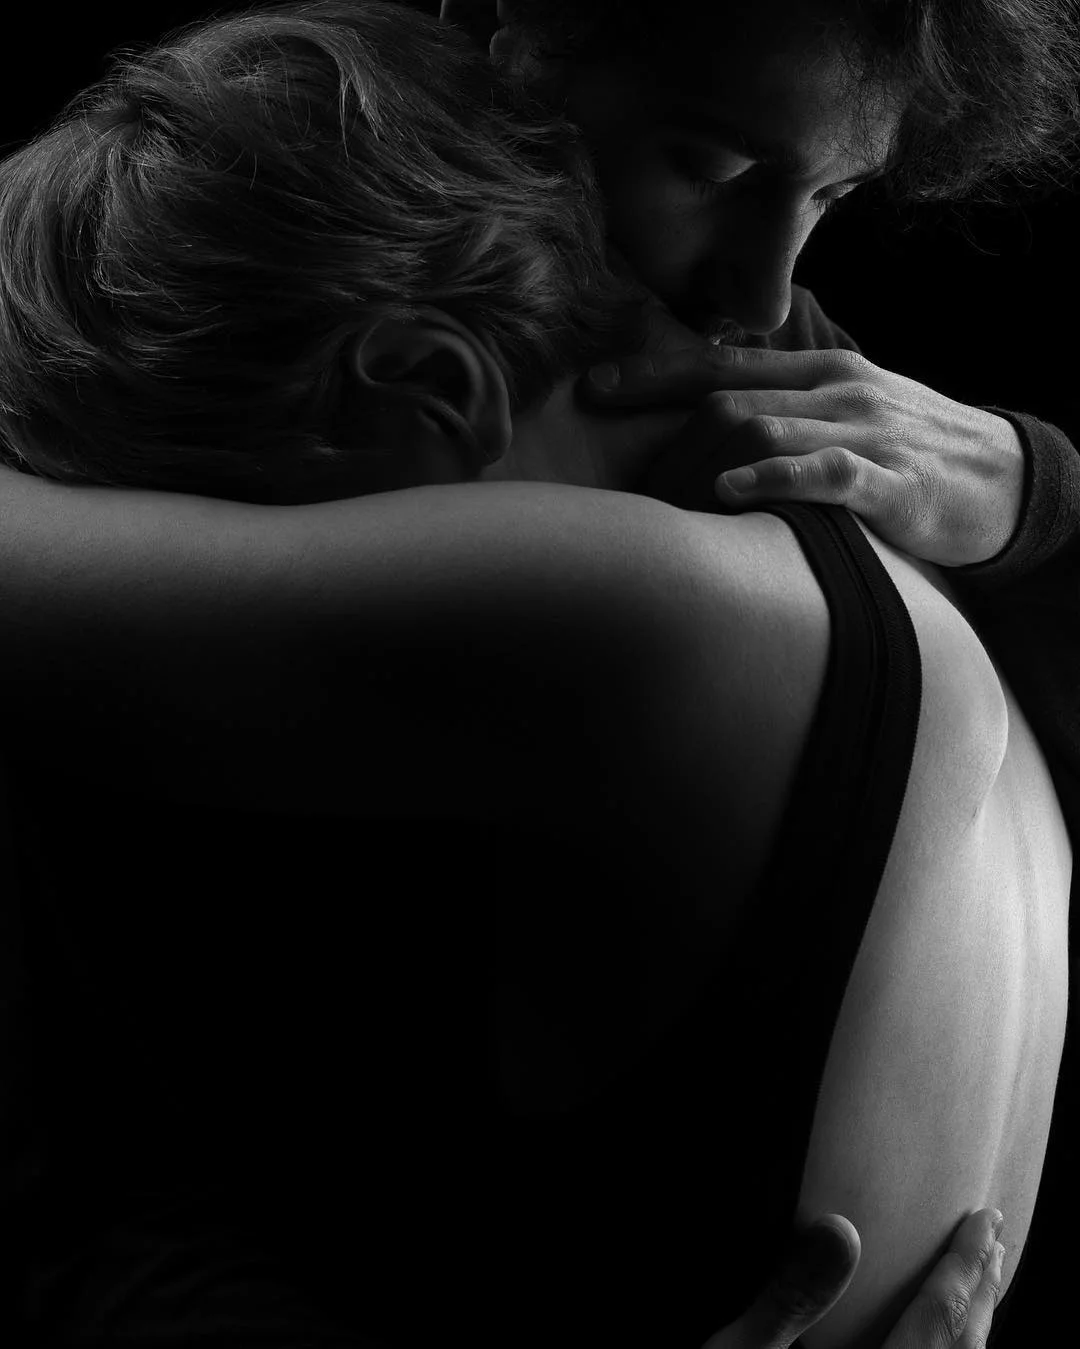 Віра Кекелія в чуттєвій фотосесії з коханим - це справжня естетична насолода - фото 425092